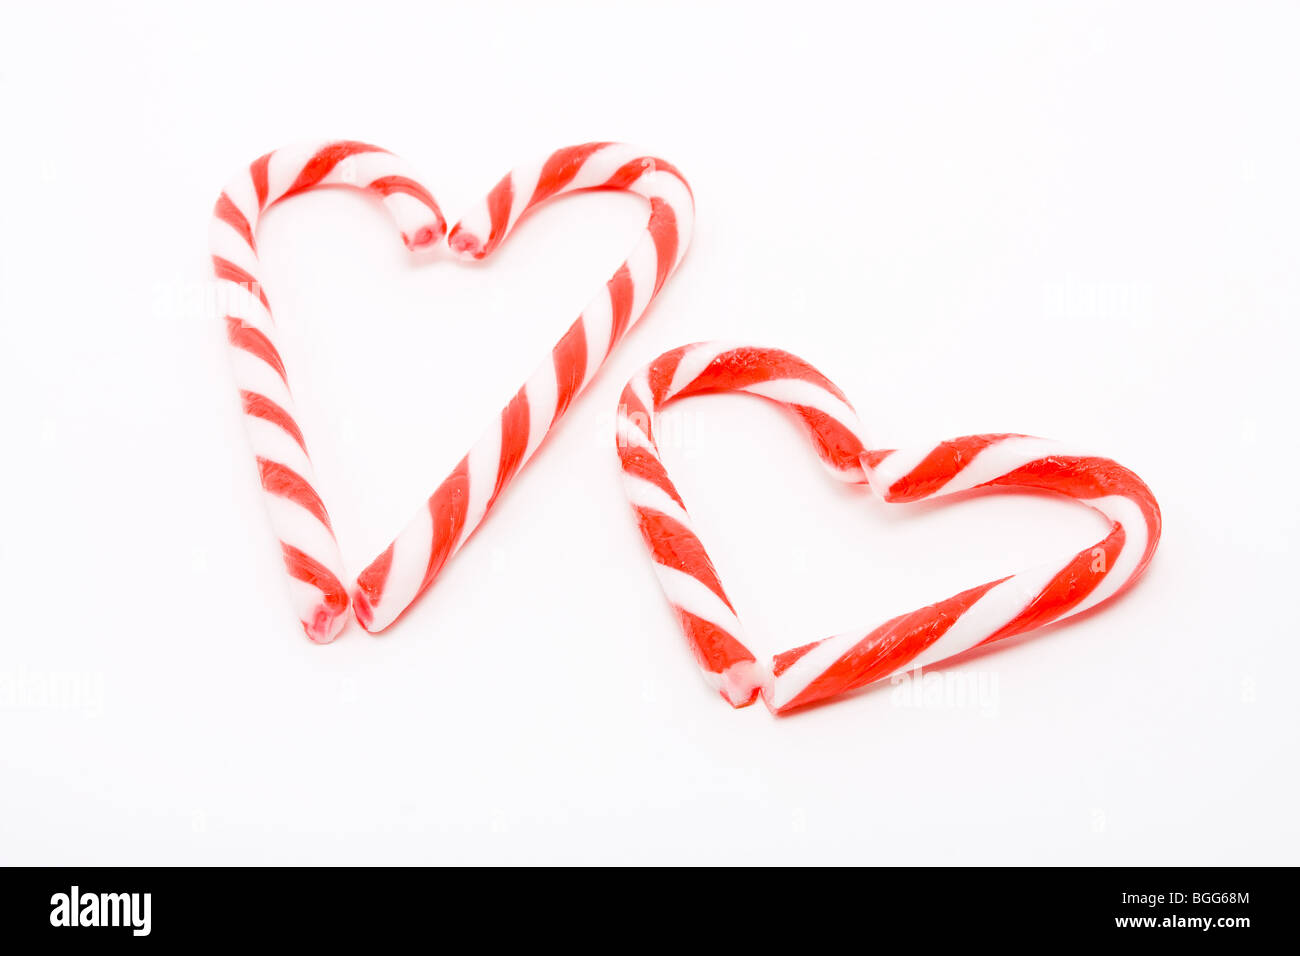 Des cannes de bonbon disposés en forme de coeur contre fond blanc pour exprimer le concept de la Saint-Valentin. Banque D'Images